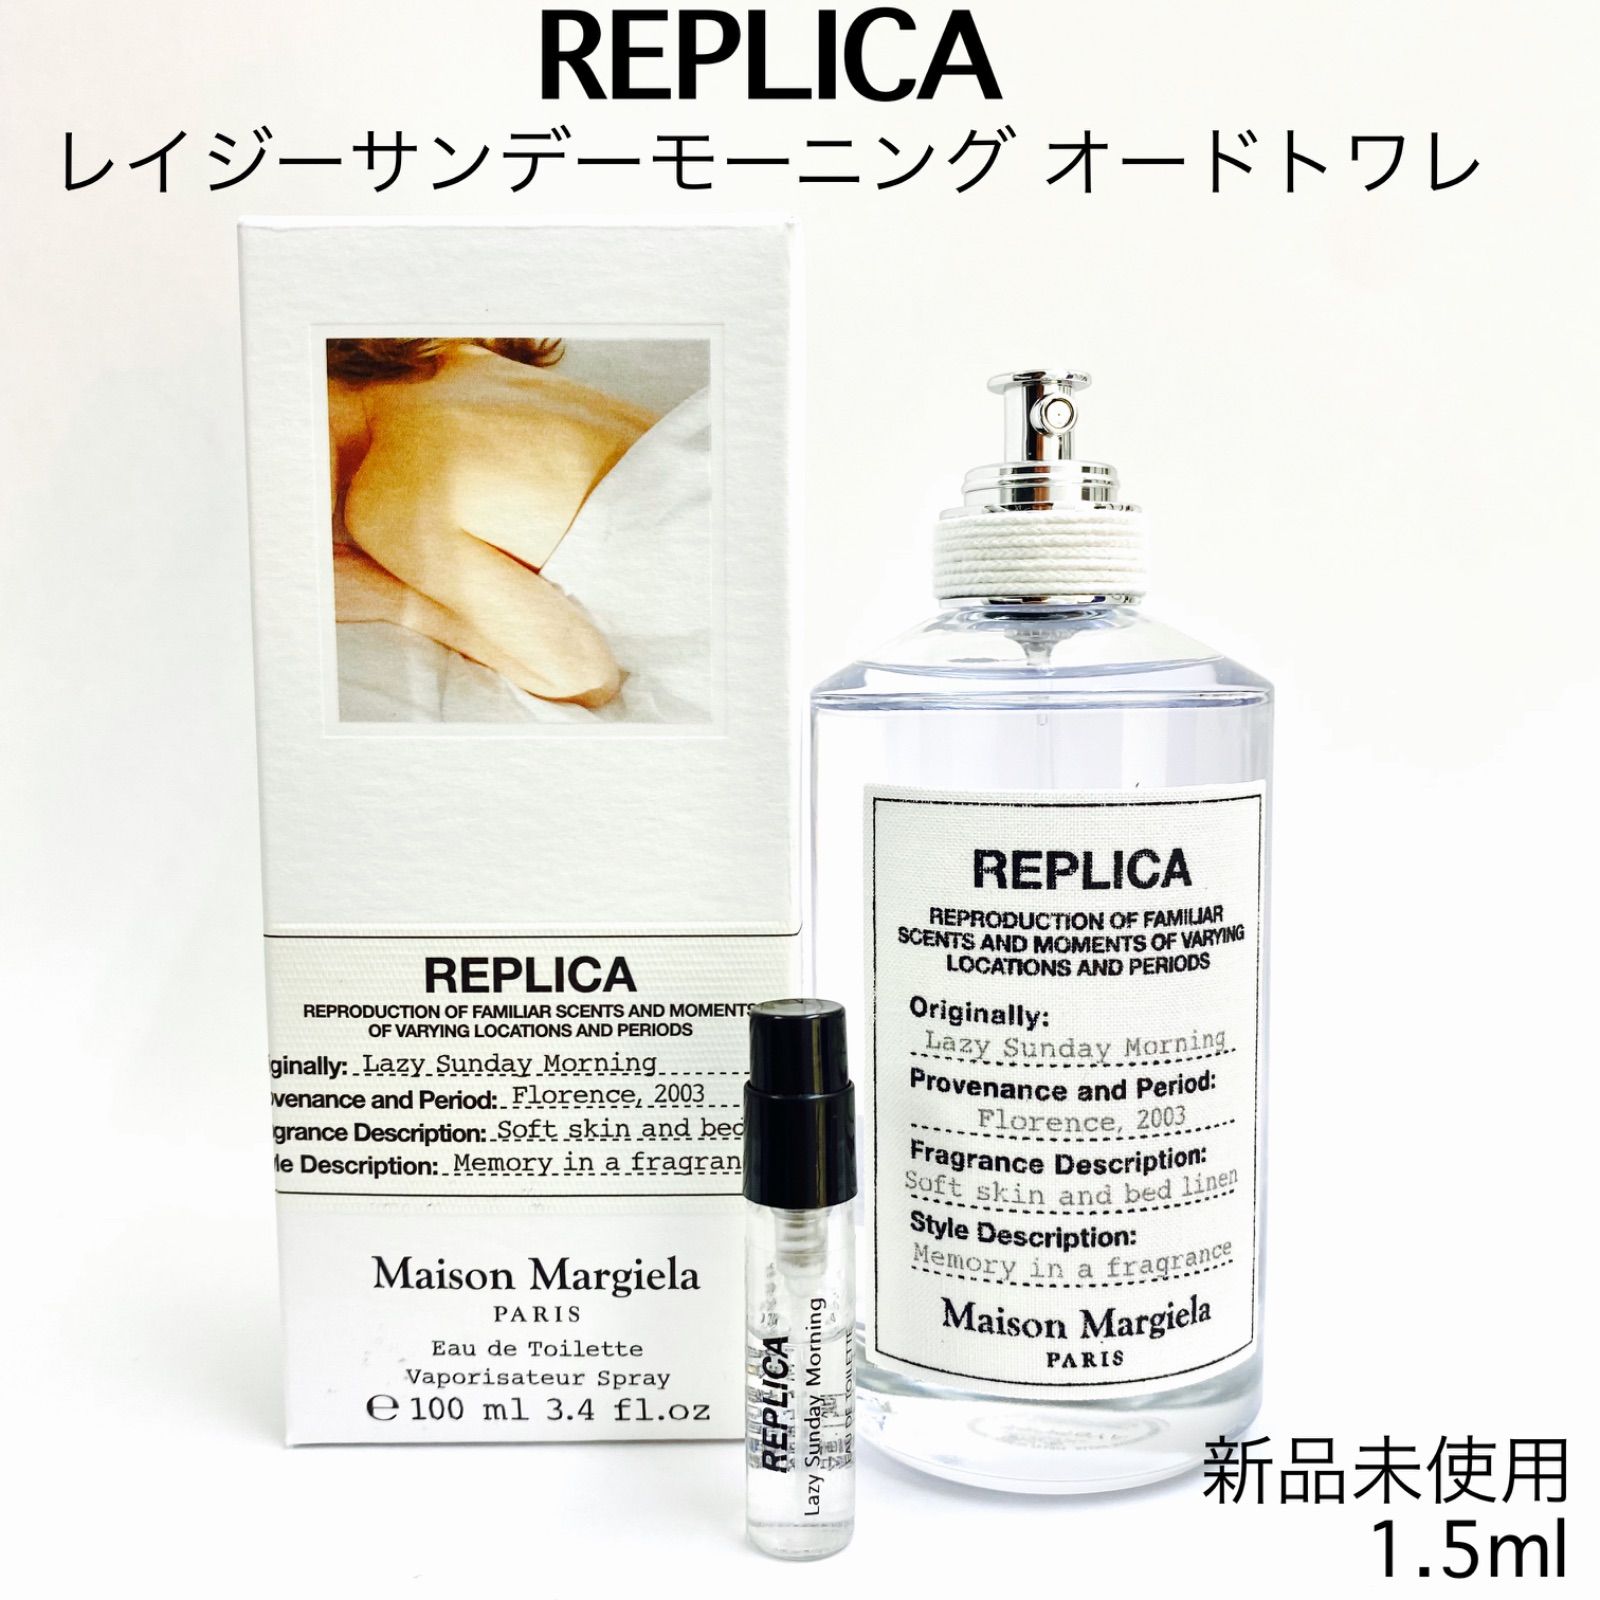 Maison Margiela レイジーサンデーモーニング 1.5ml 香水